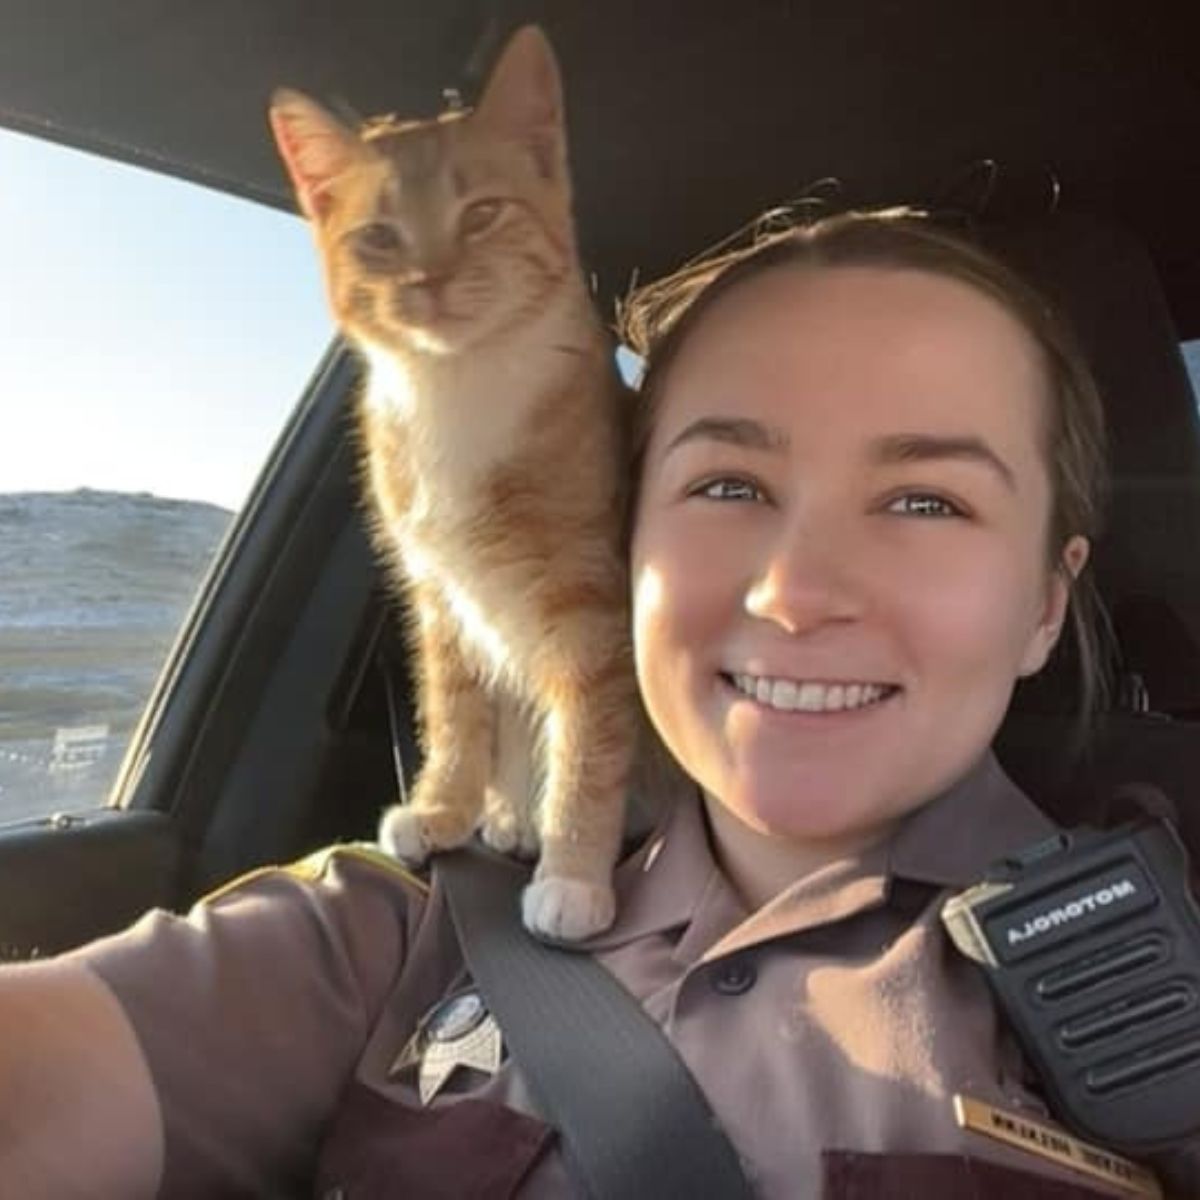 cat on police officers shoulder